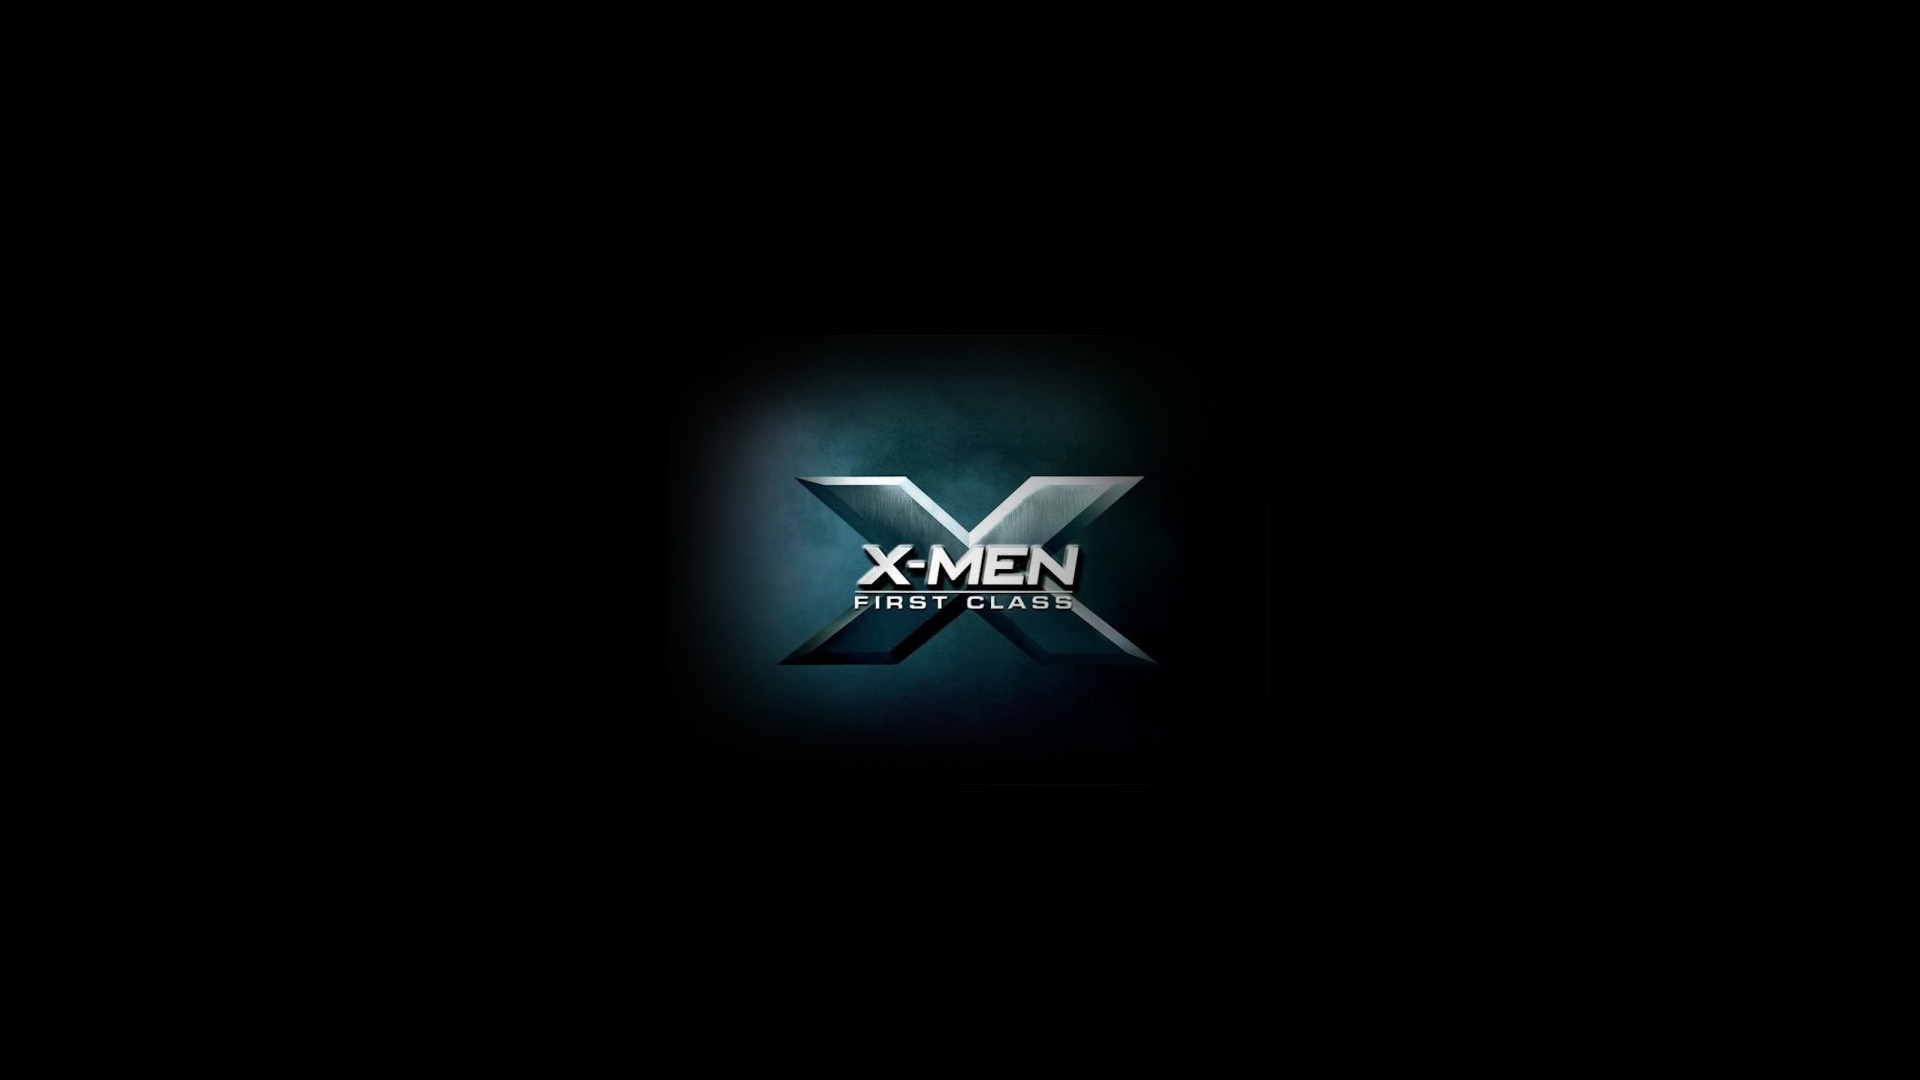 X Men First Class 2011 for 1920 x 1080 HDTV 1080p resolution